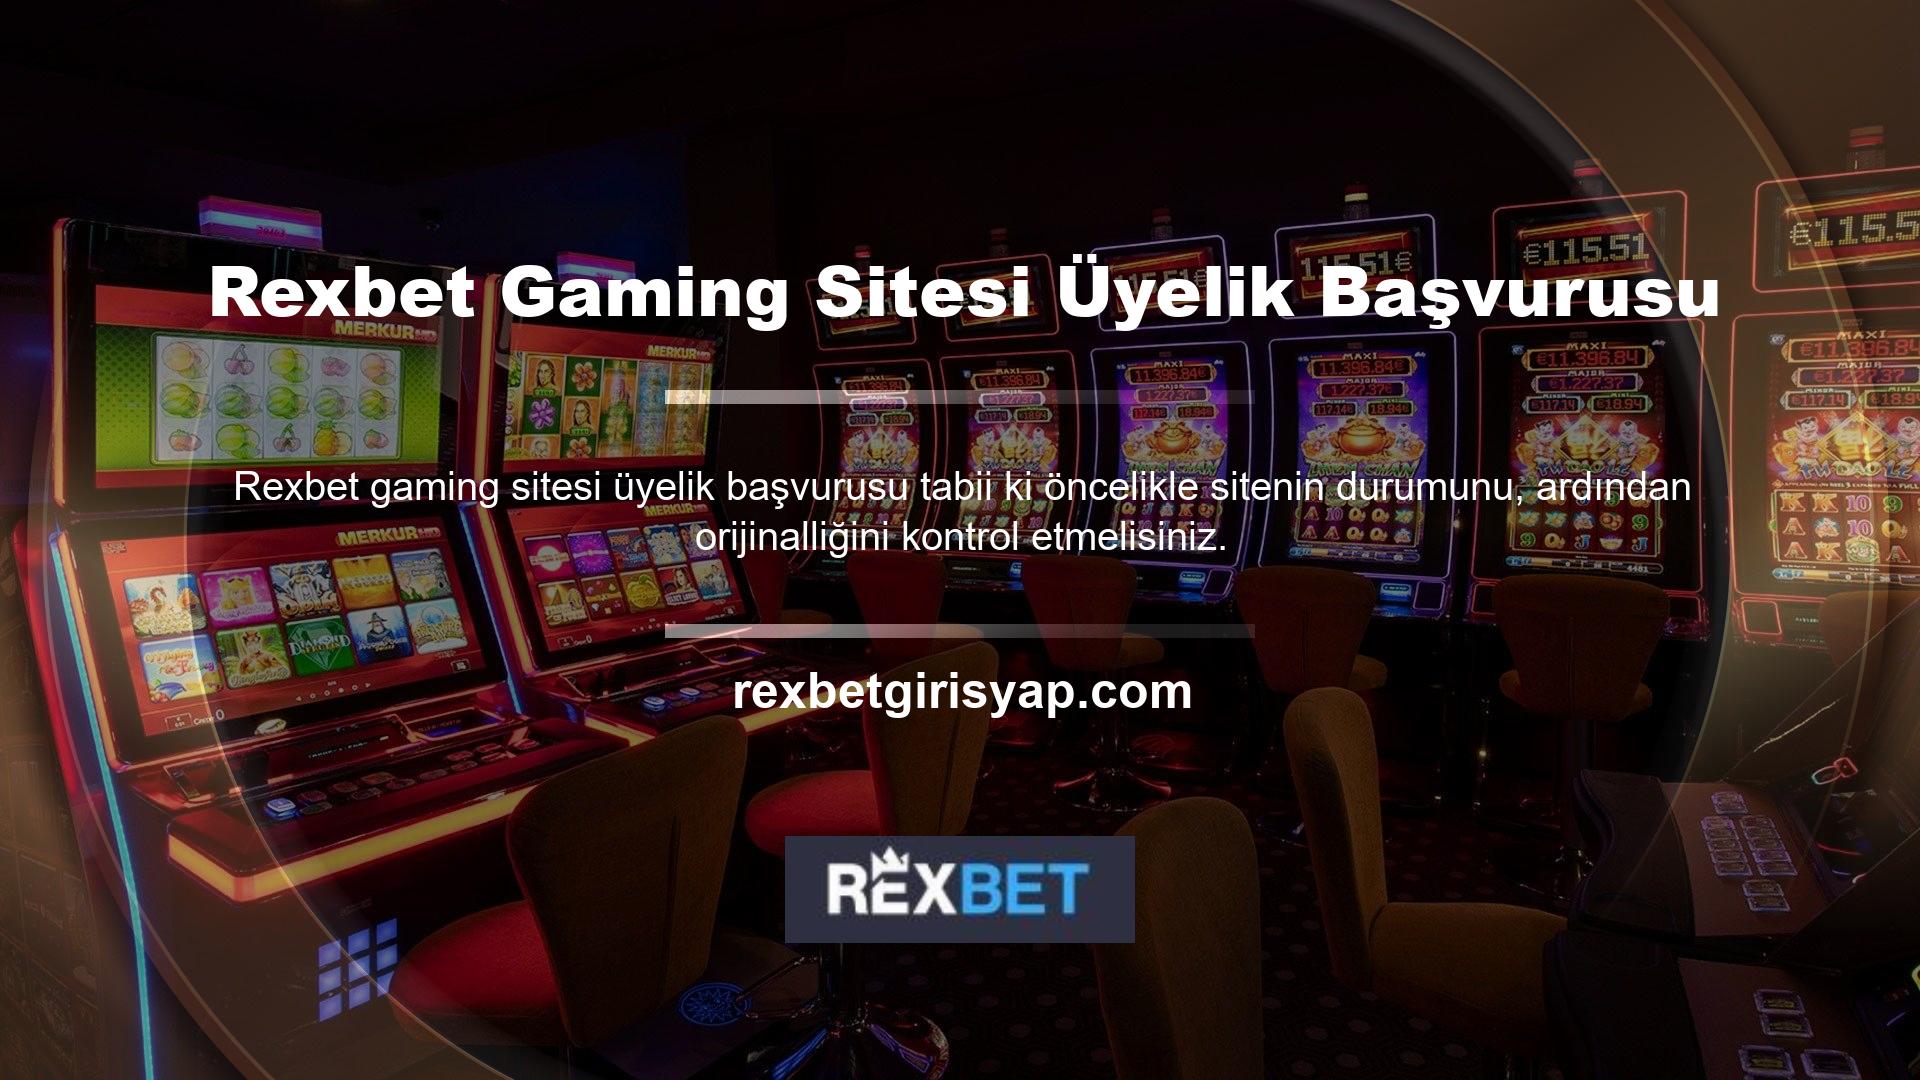 Bu hedefe ulaşmak için Rexbet Oyun Sitesi Üyelik Uygulaması Casino, ödeme teknolojisinin mevcut durumunu araştırmaktadır